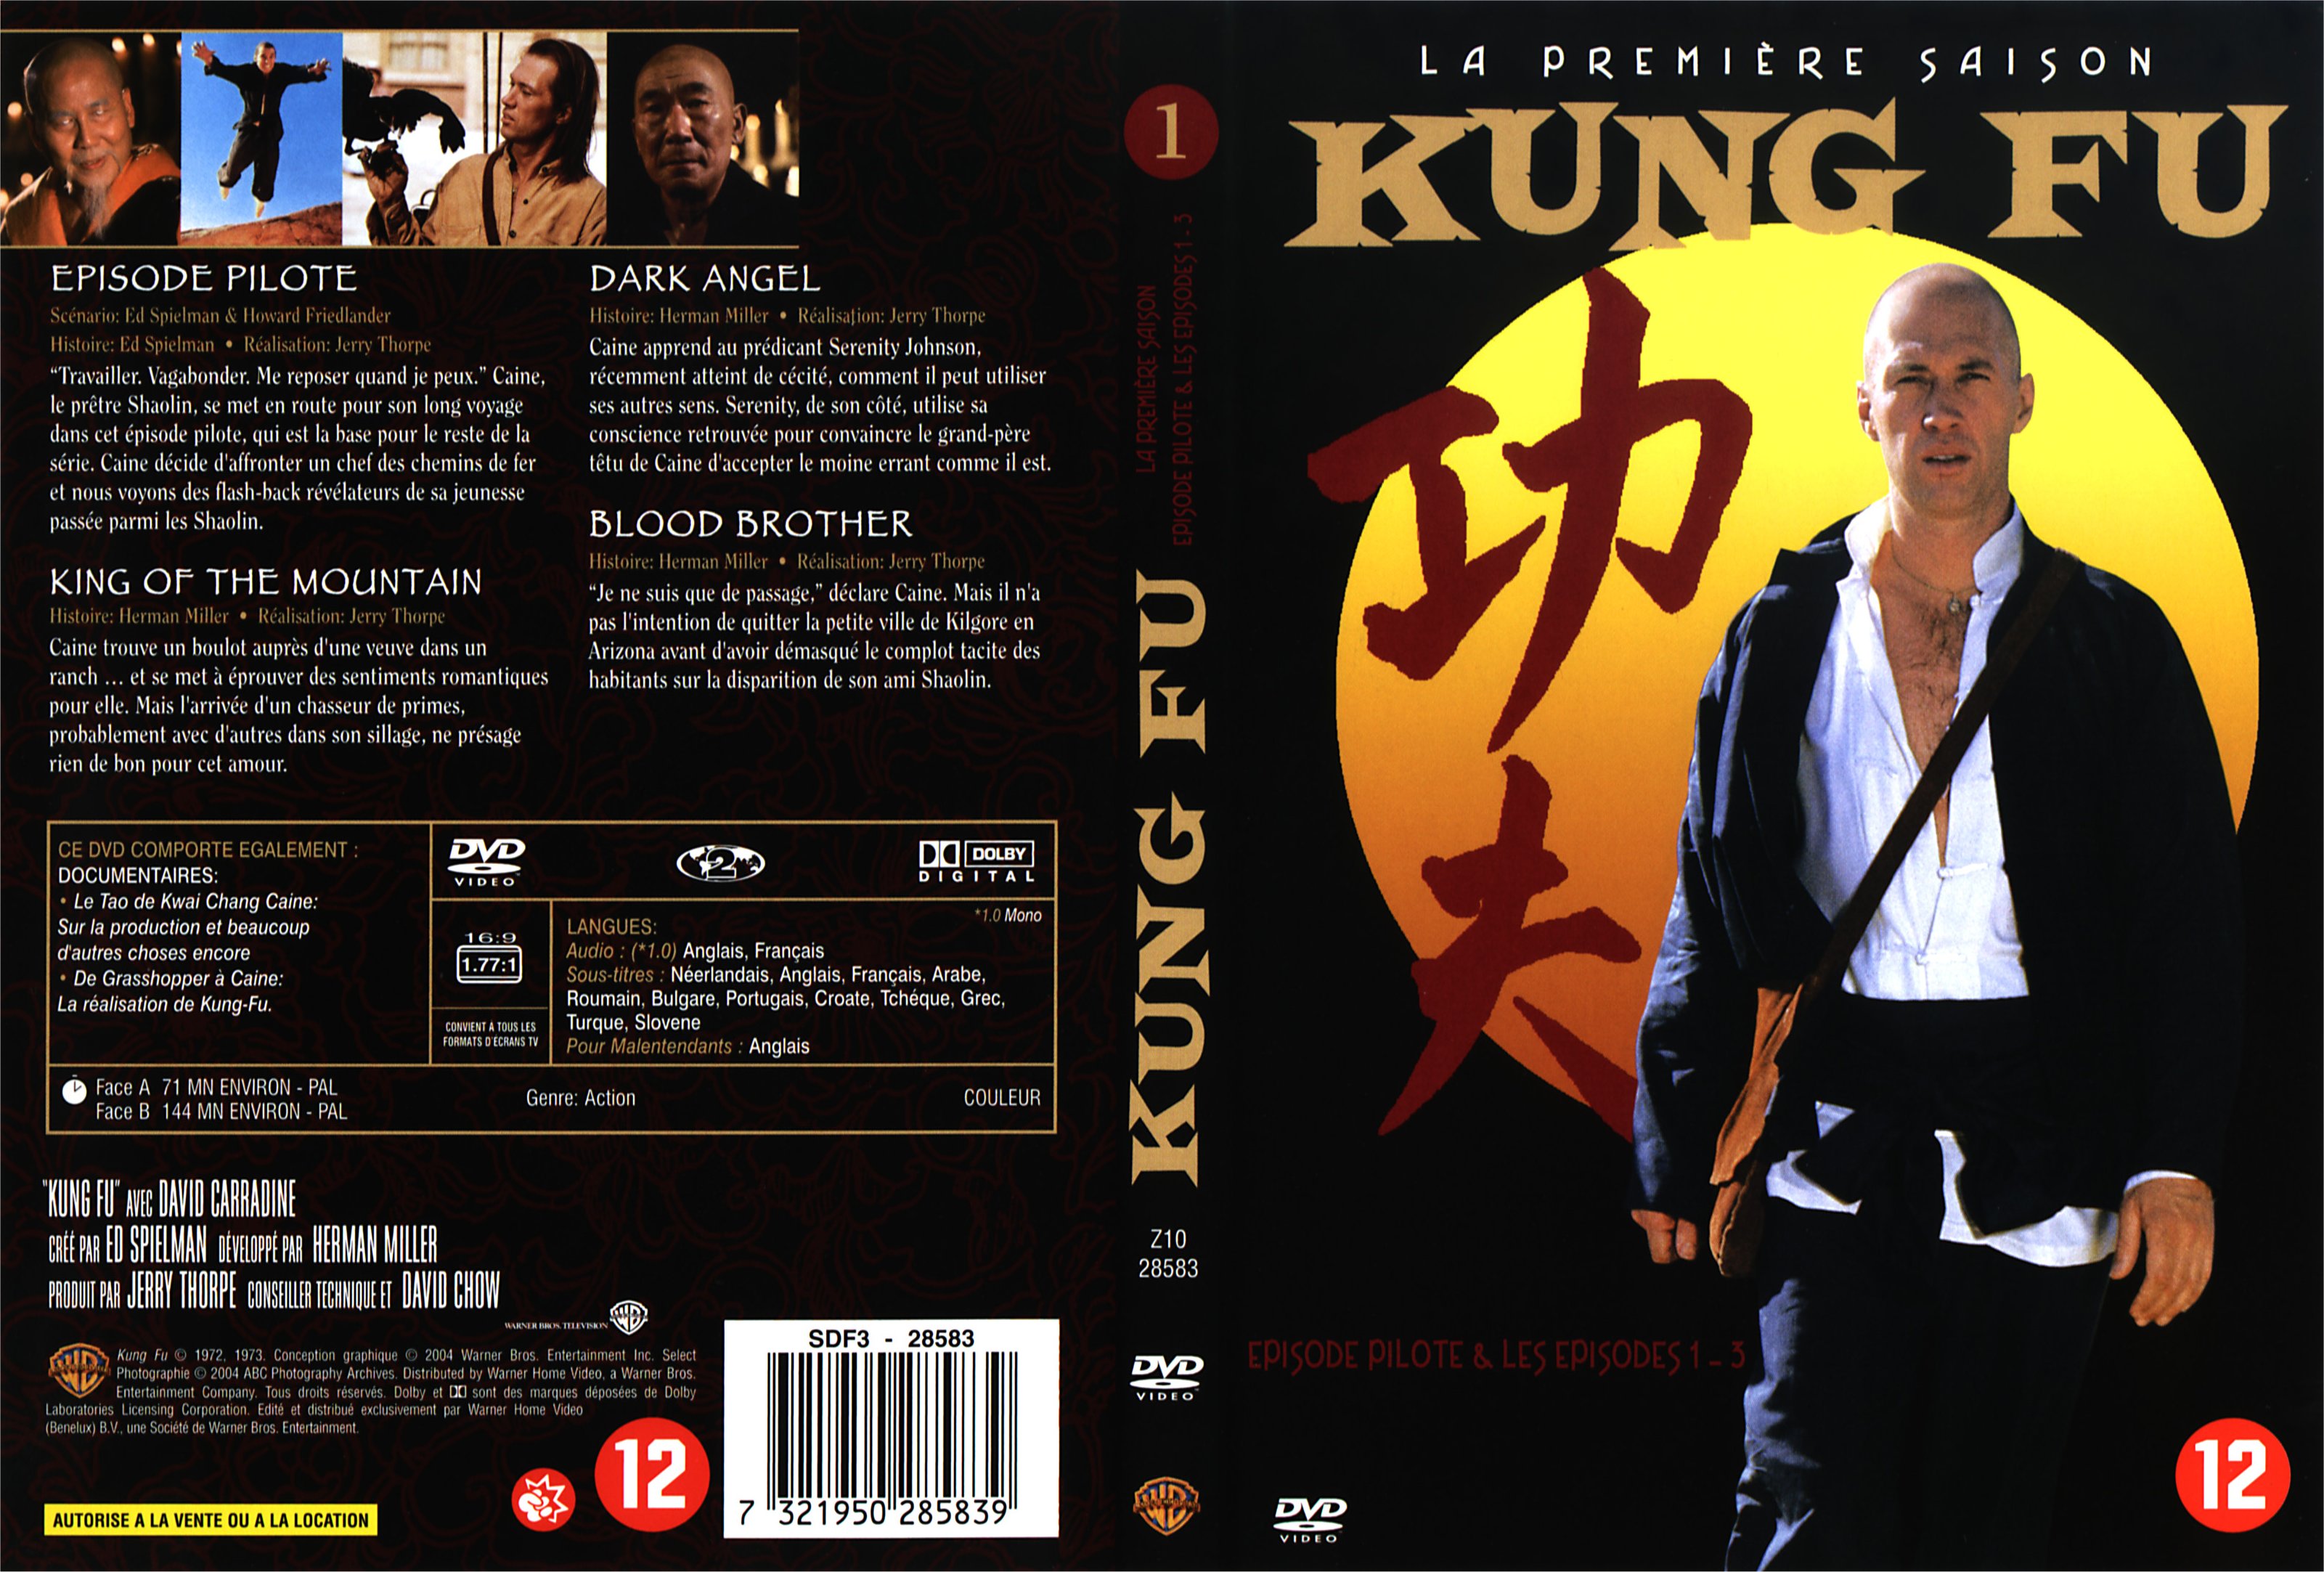 Jaquette DVD Kung fu saison 1 vol 1